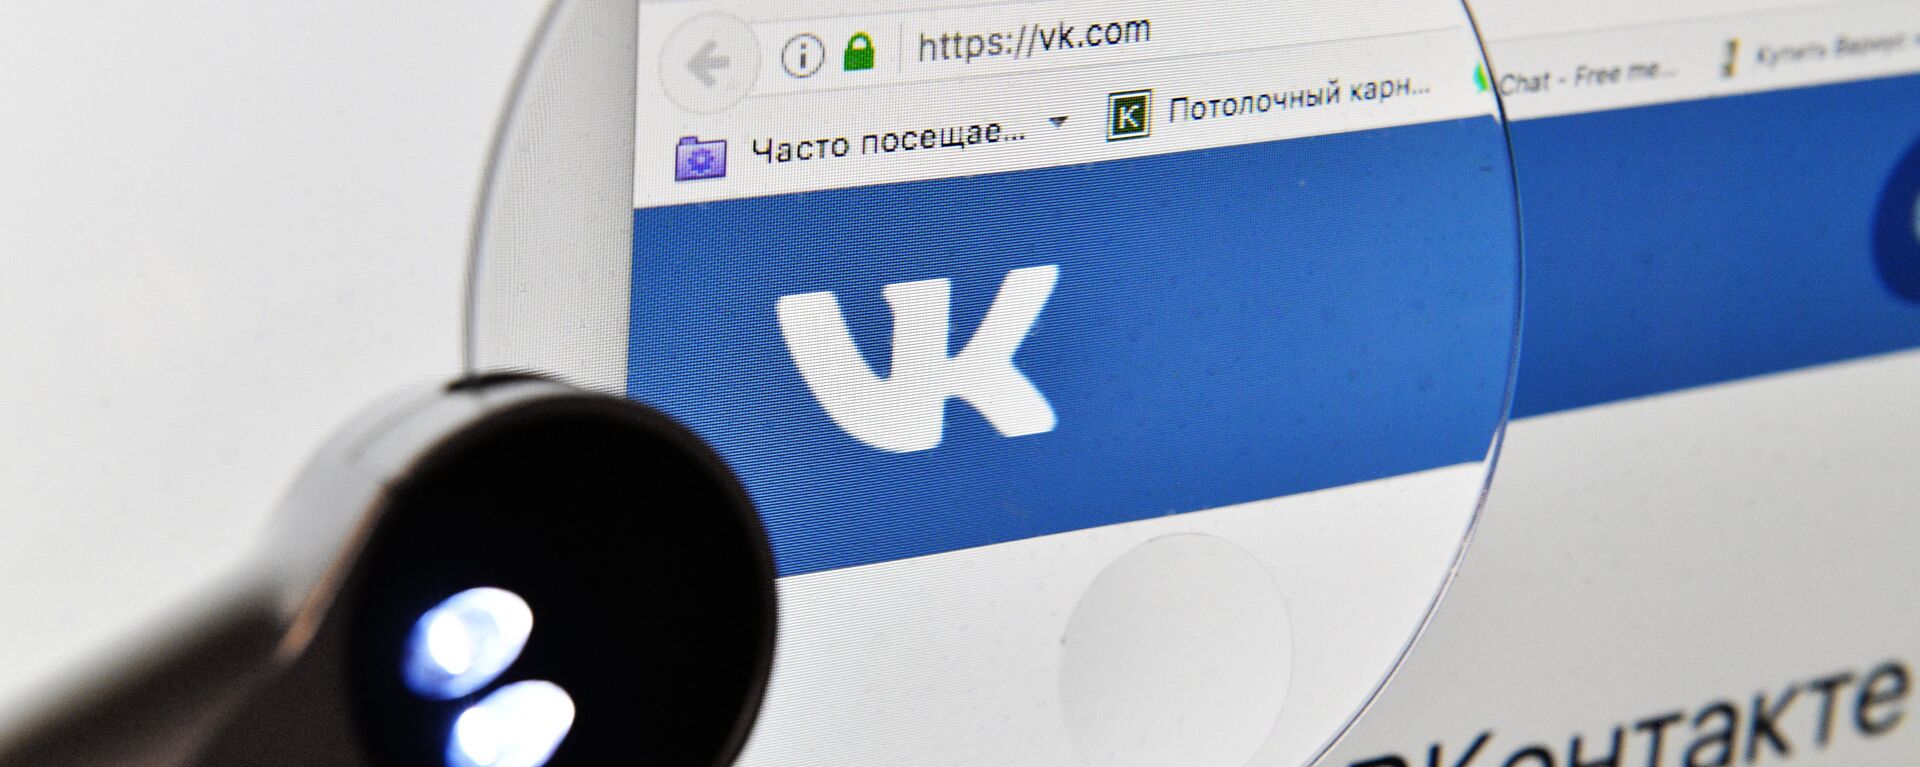 Vkontakte social network service - Sputnik International, 1920, 29.04.2023